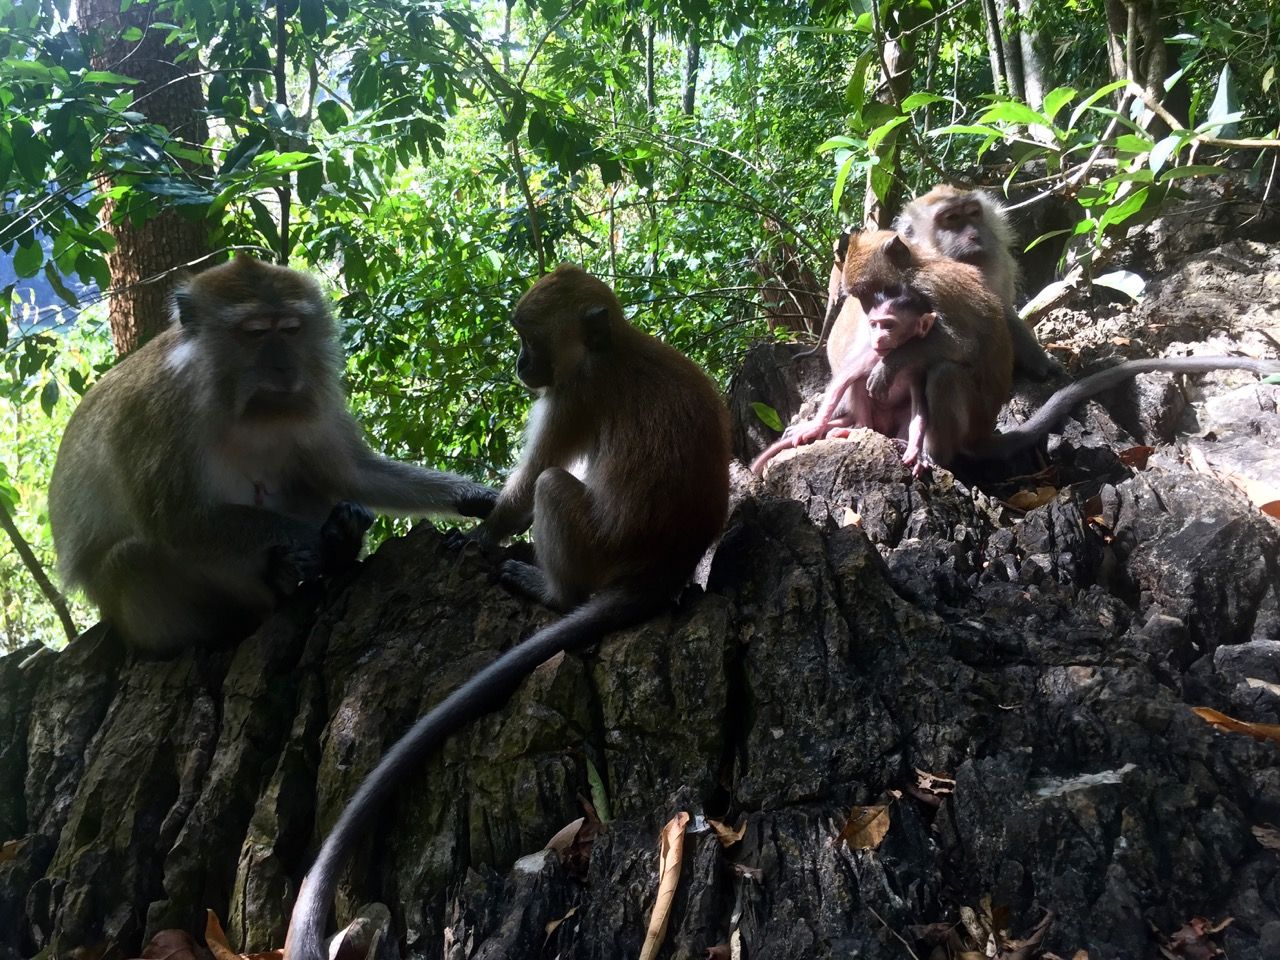 Monkeys sitting on a rock.